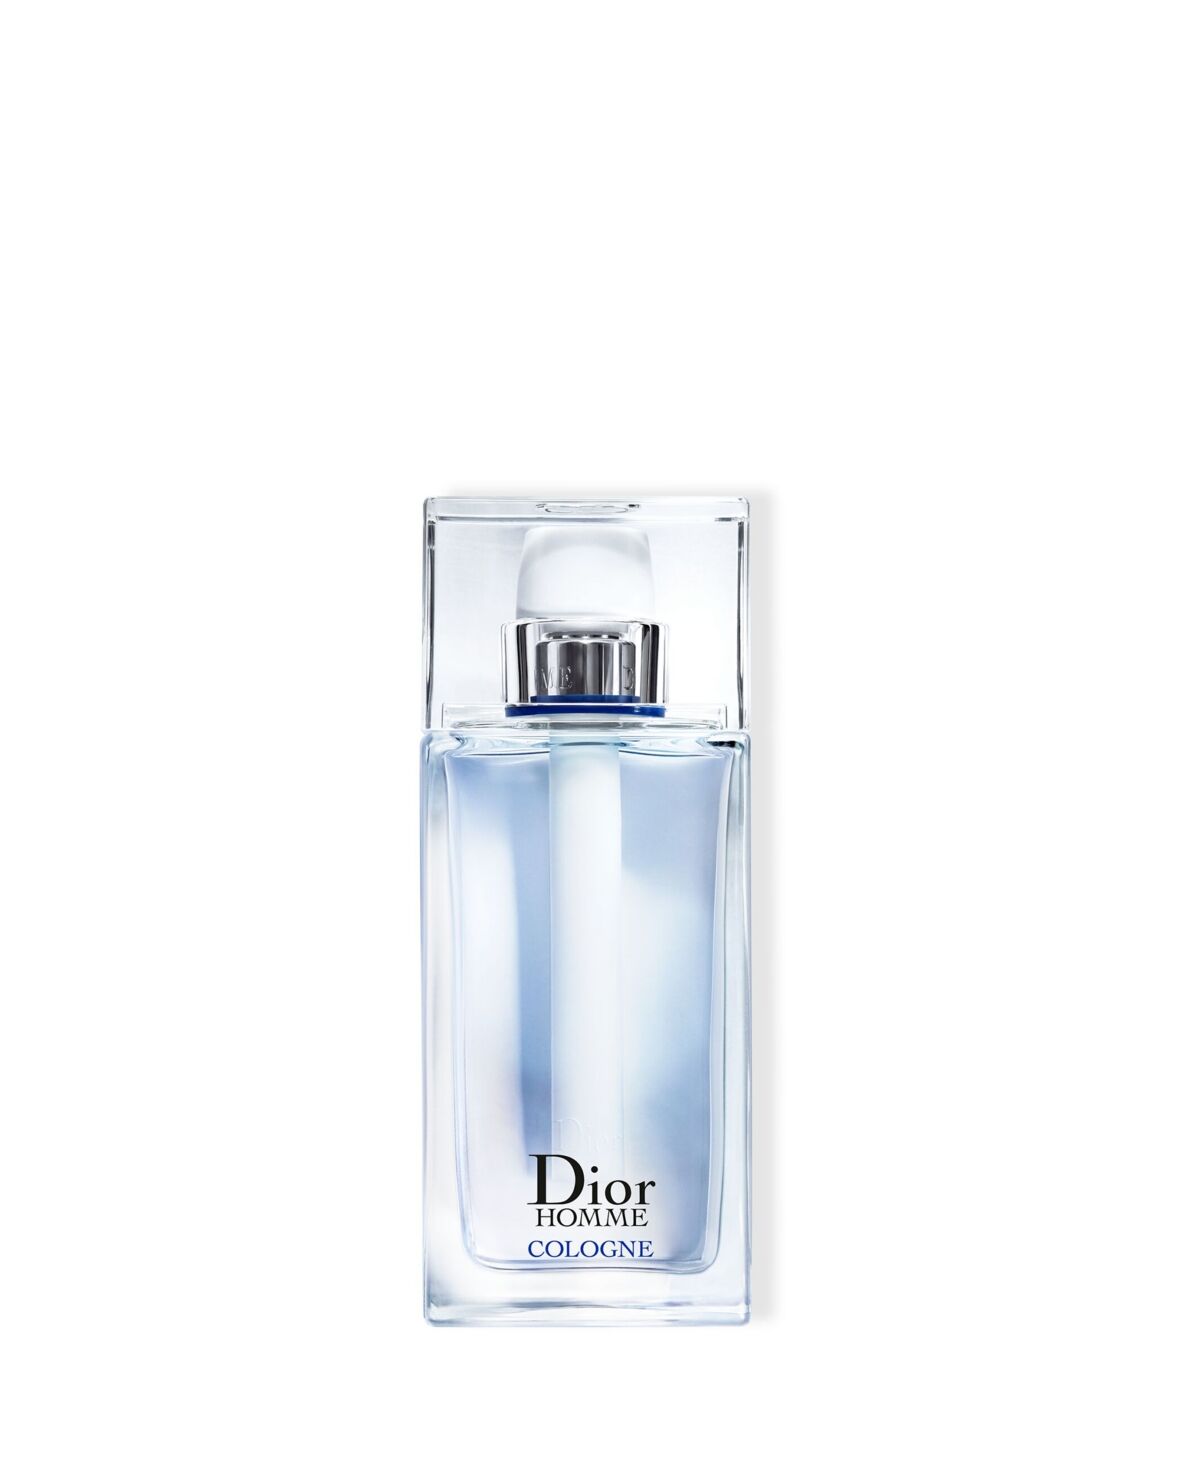 Christian Dior Men's Homme Cologne Eau de Toilette Spray, 2.5 oz.